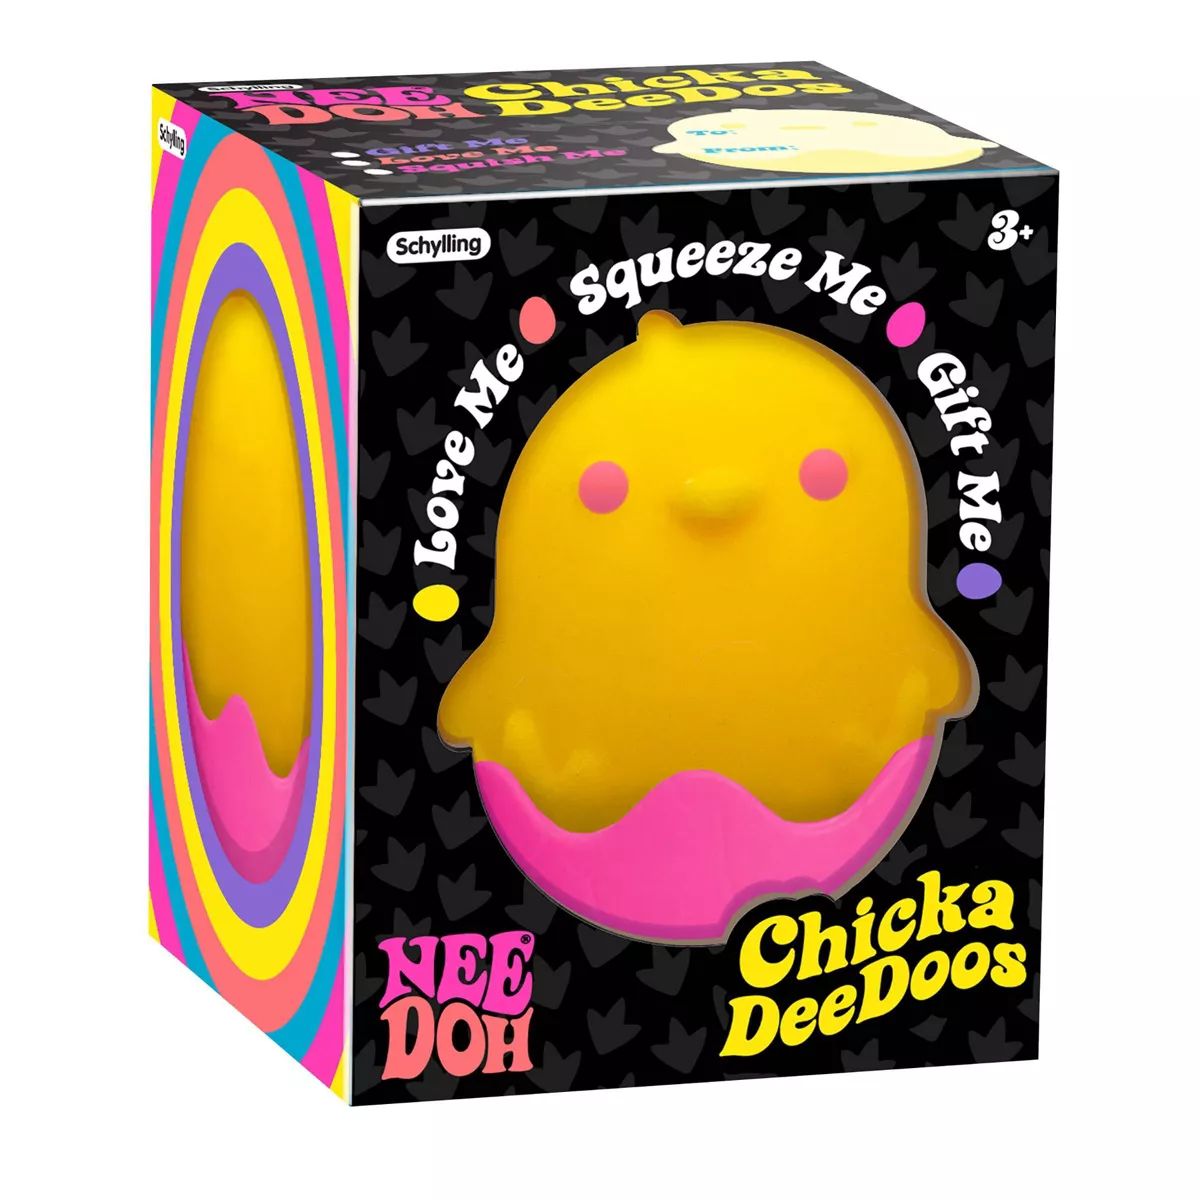 Nee Doh Chicka Deedo's | Target